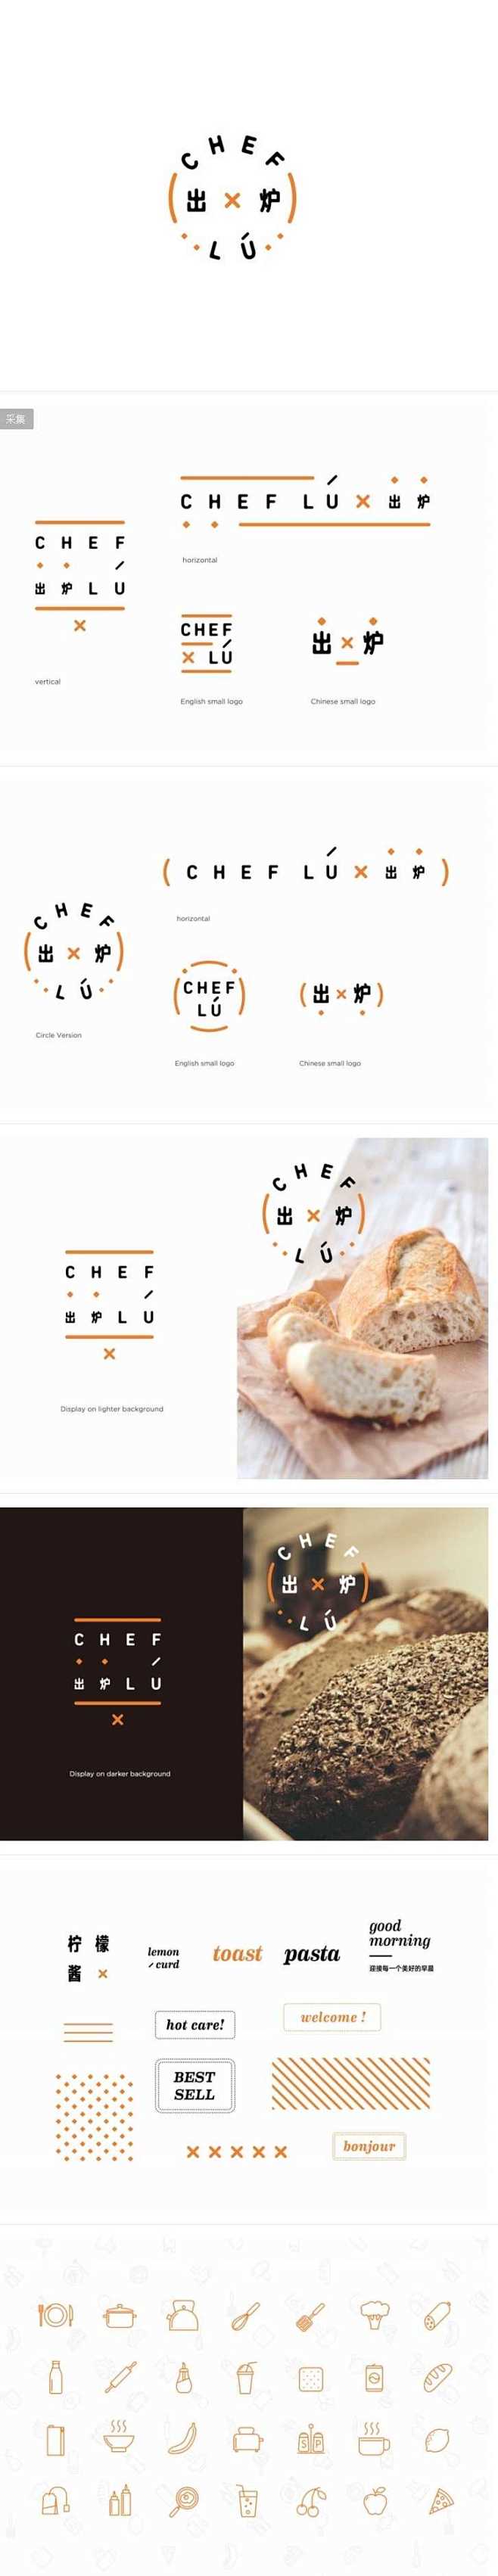 Chef Lu出炉面包店品牌设计 | J...